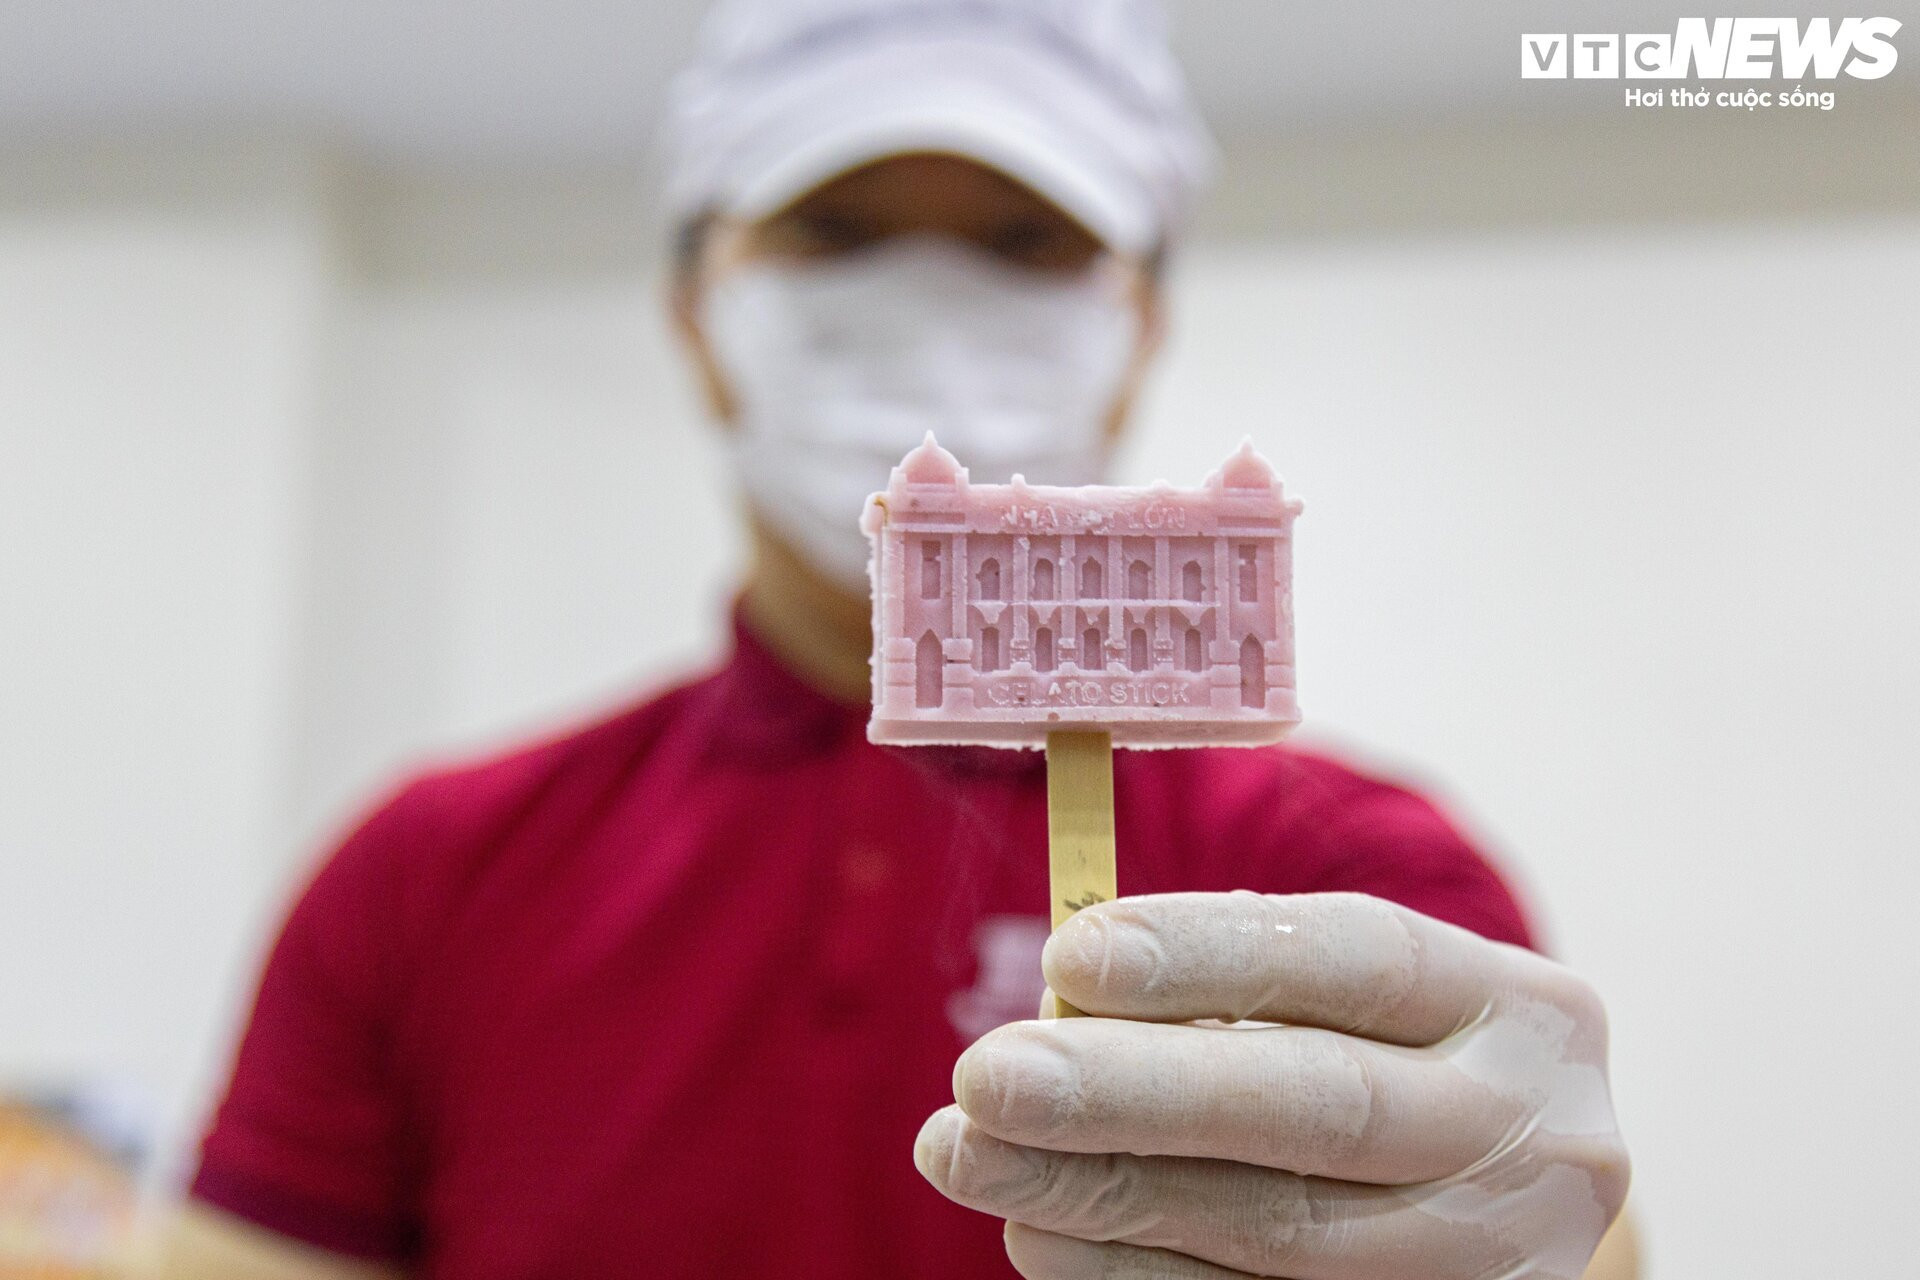 Cận cảnh quy trình làm kem 3D tạo hình 11 địa danh nổi tiếng ở Hà Nội - 15